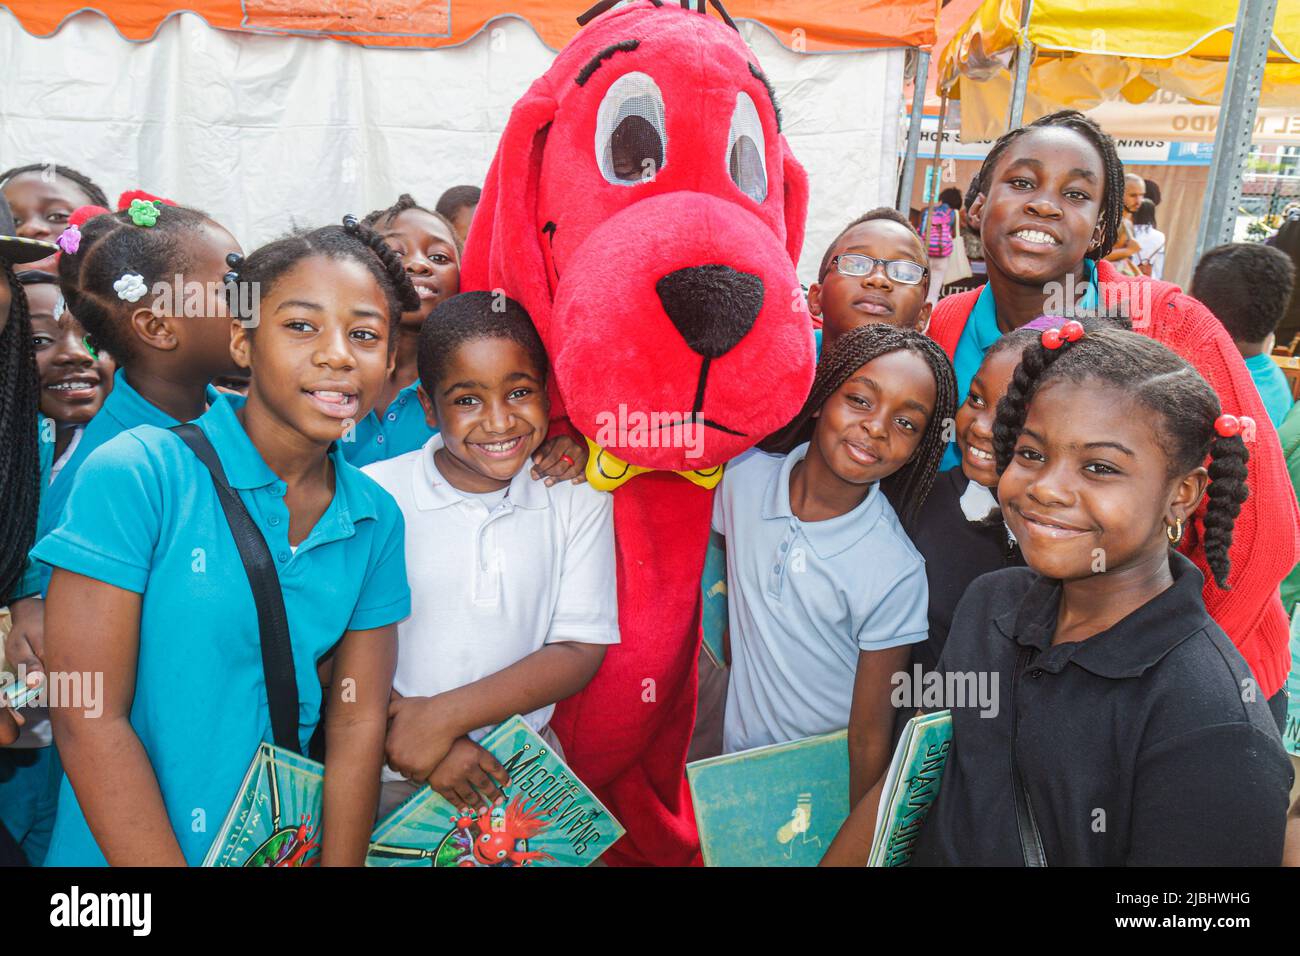 Miami Florida,Book Fair International,Clifford le personnage des enfants de Big Red Dog,fans,Black Girls garçons étudiants amis classe voyage sur le terrain Banque D'Images